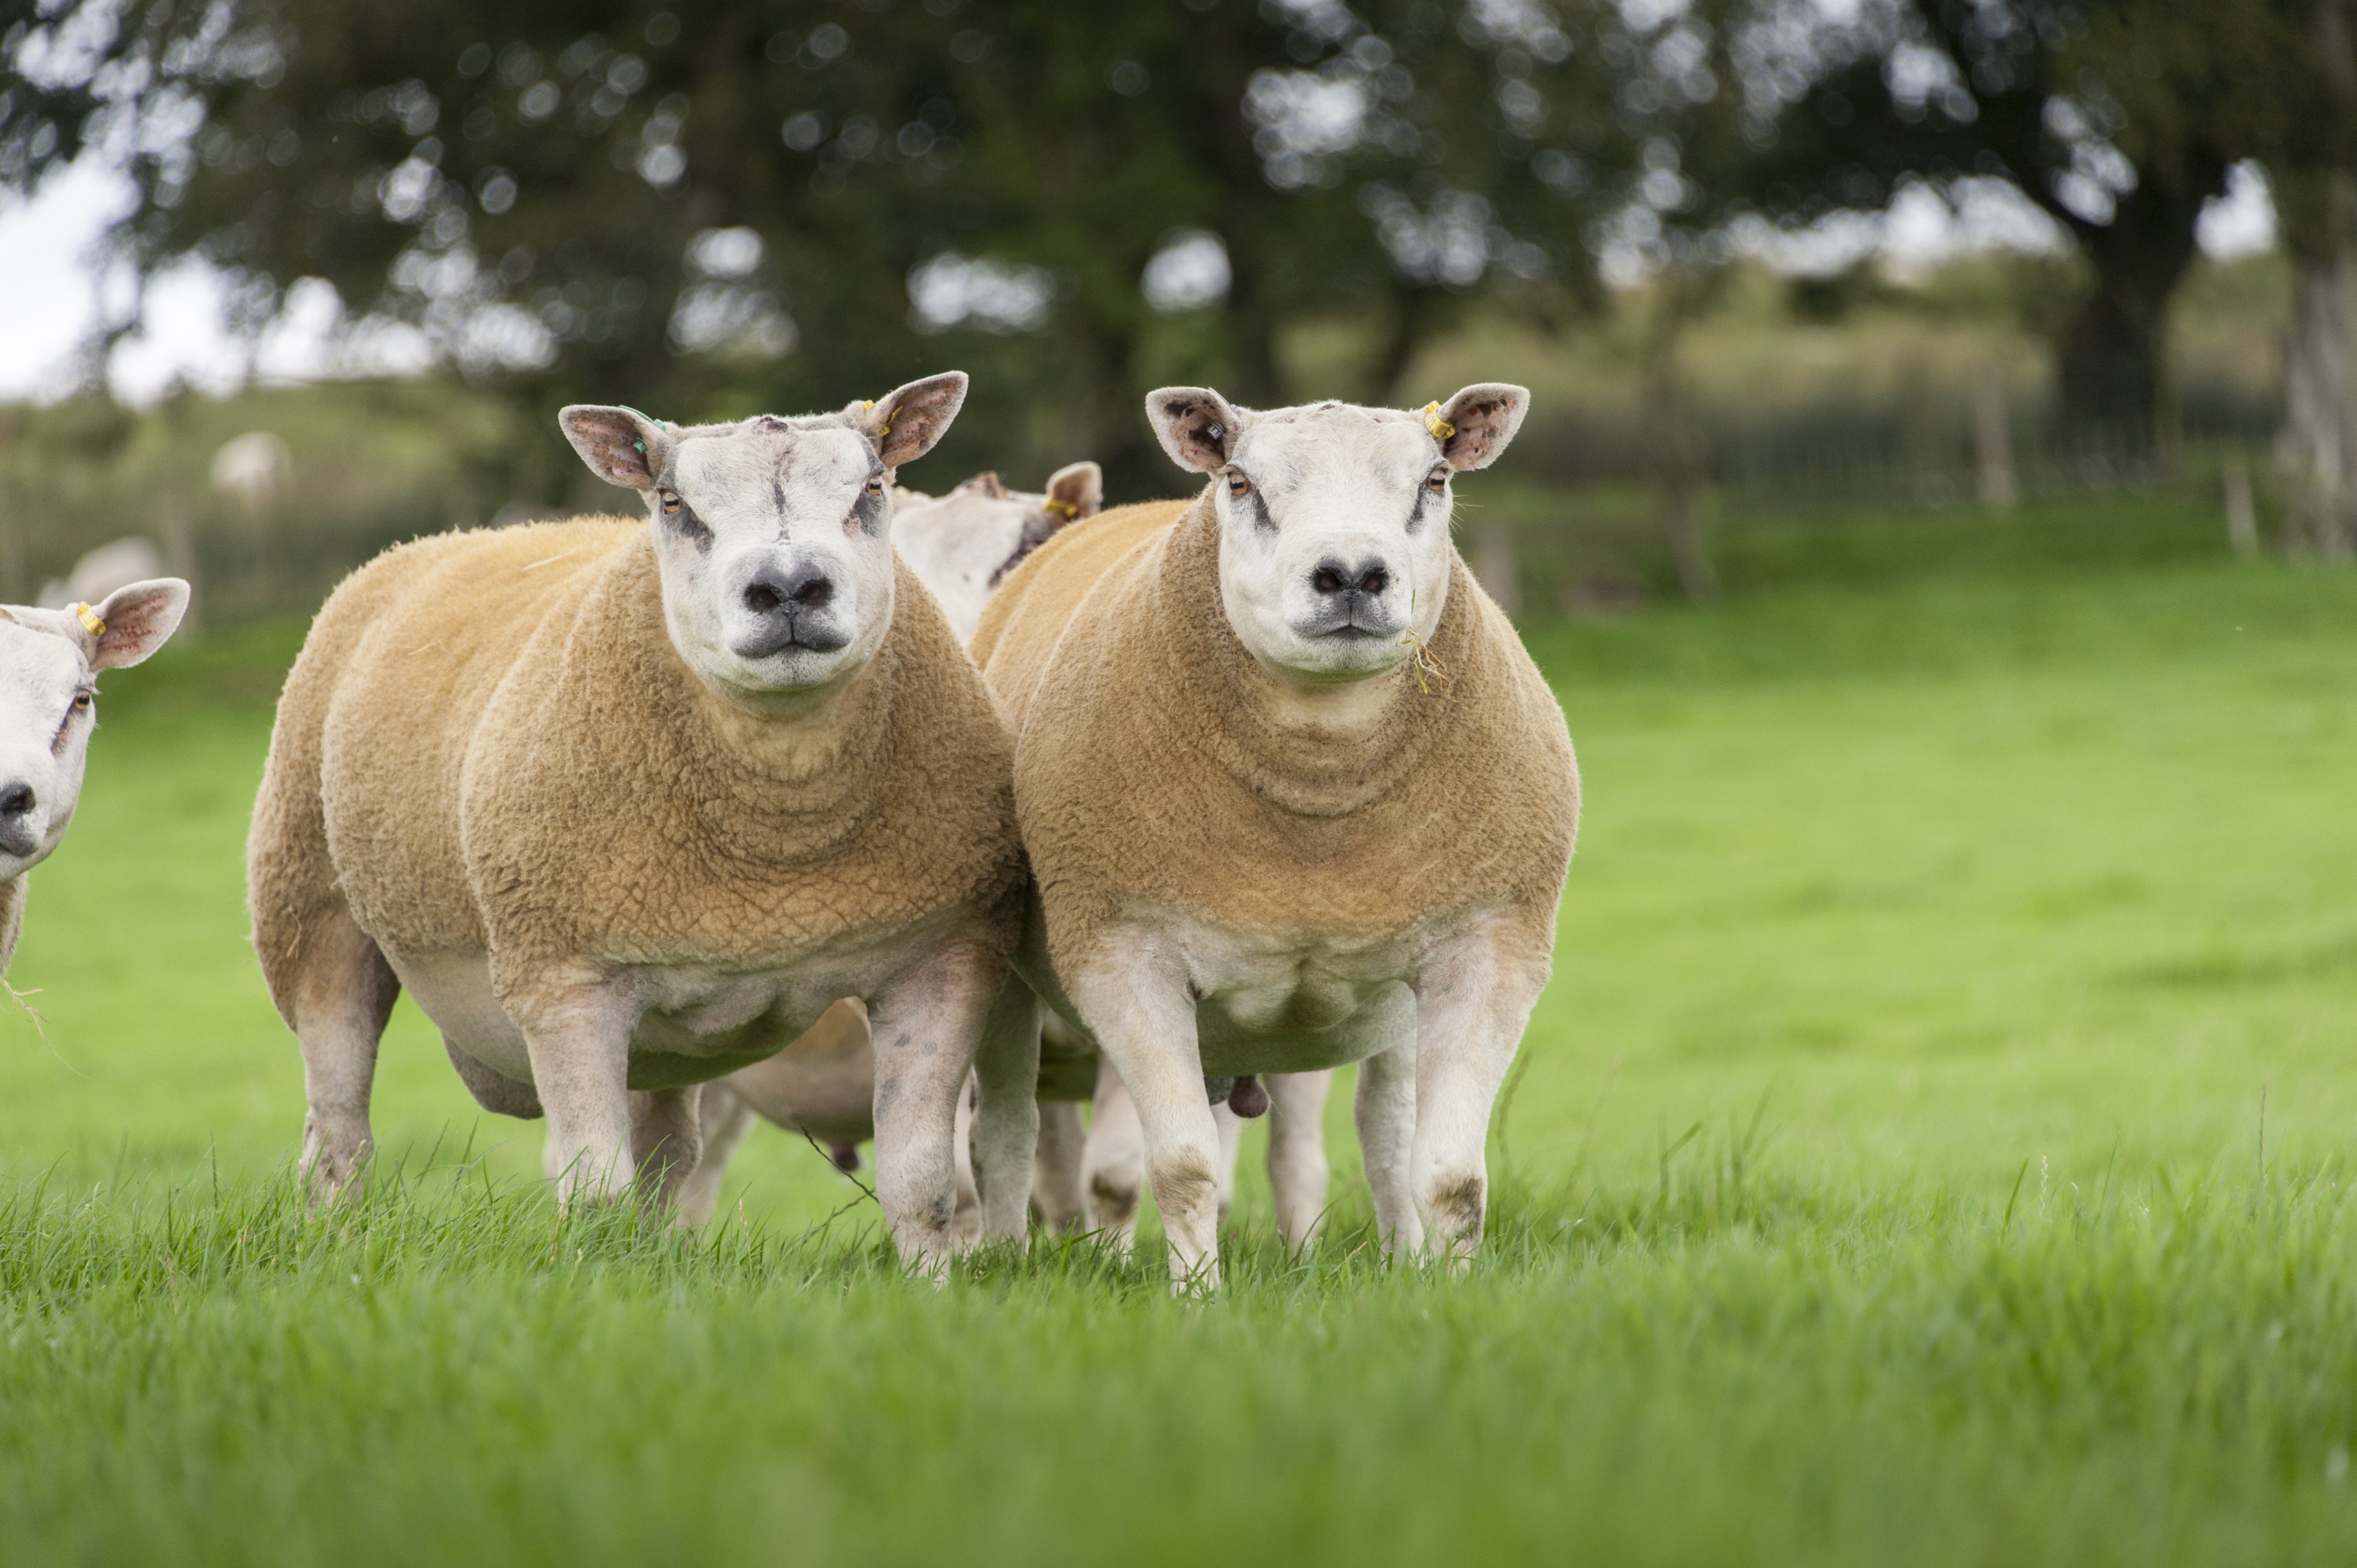 أغلى خروف في العالم يُباع في مزاد اسكتلندي